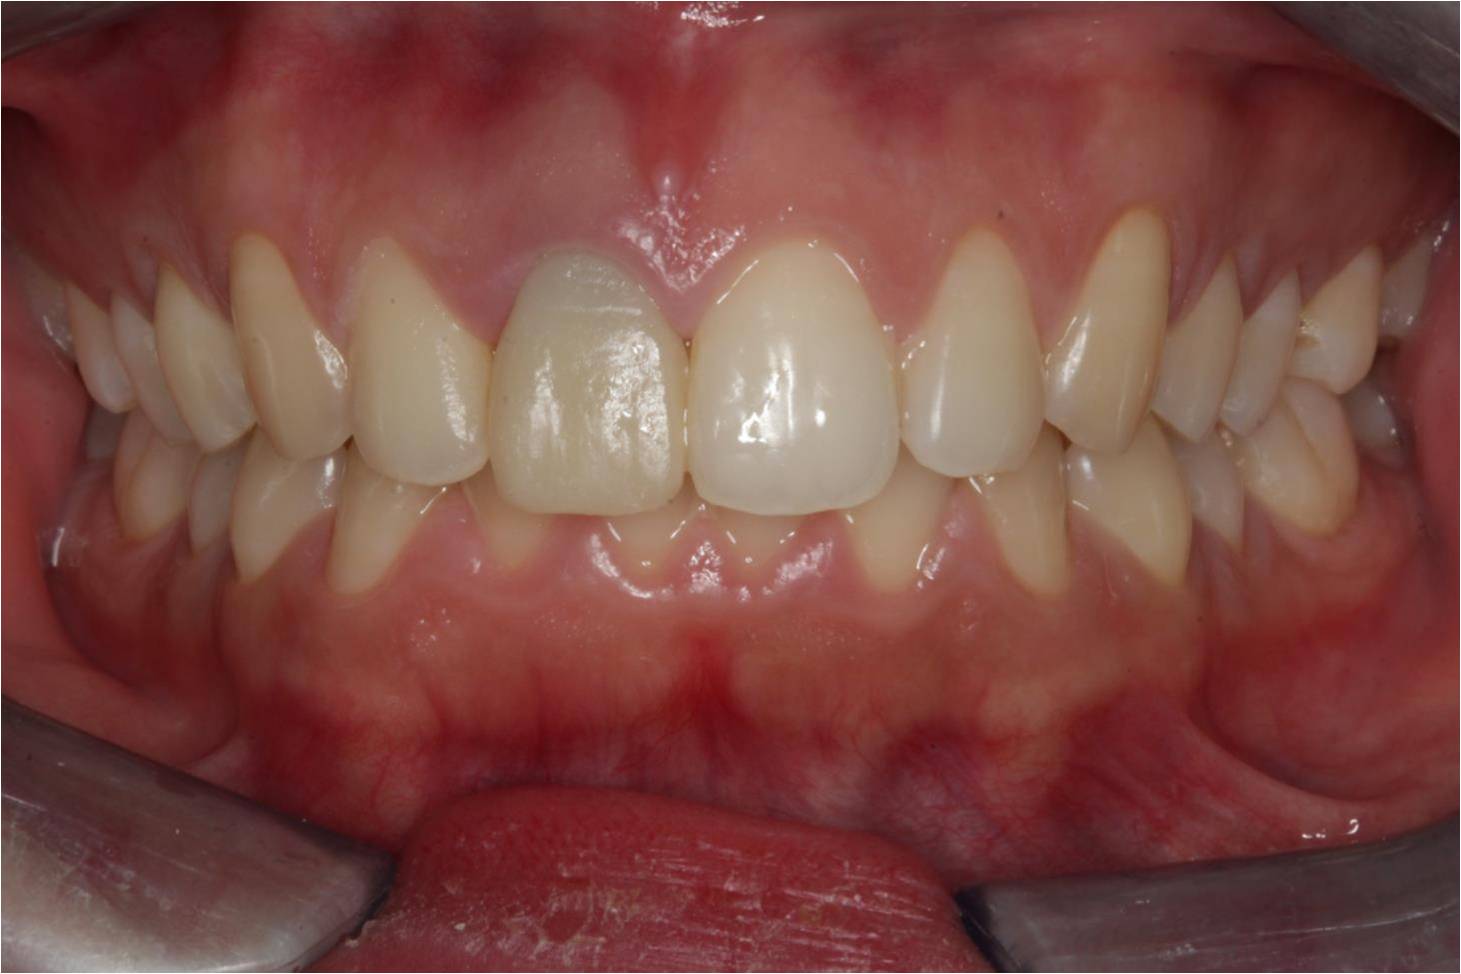 聚合瓷遮色铸造桩在前牙美学修复中应用 1 例